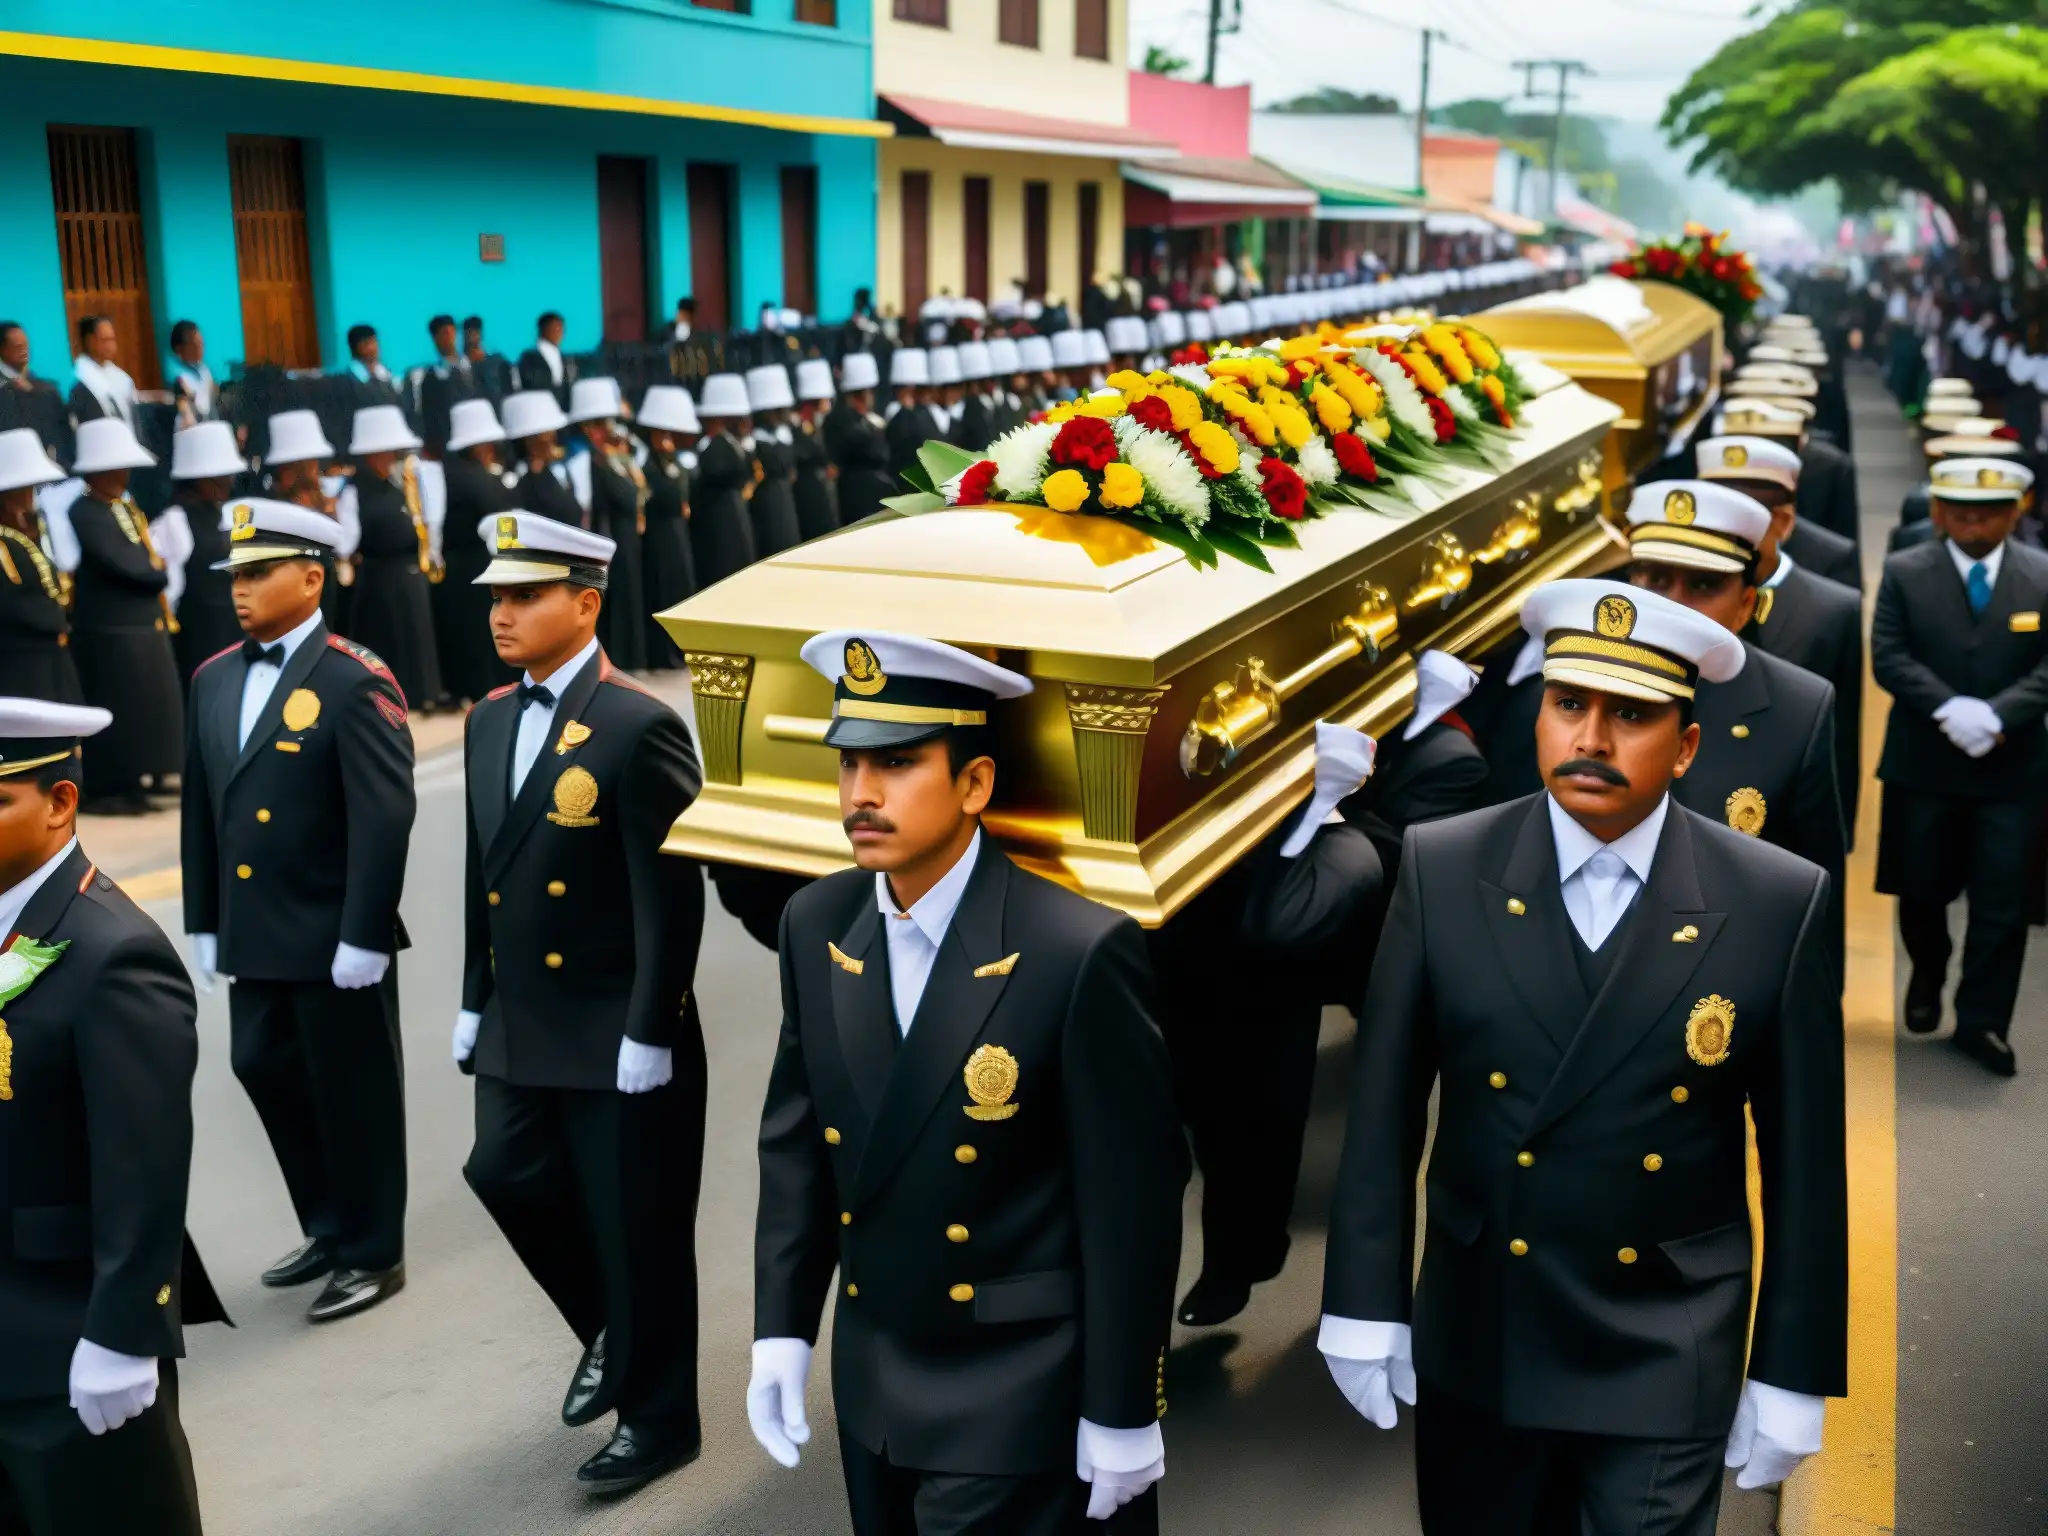 Procesión fúnebre en Centroamérica: sonido de la muerte en Centroamérica, música y expresión colectiva de dolor